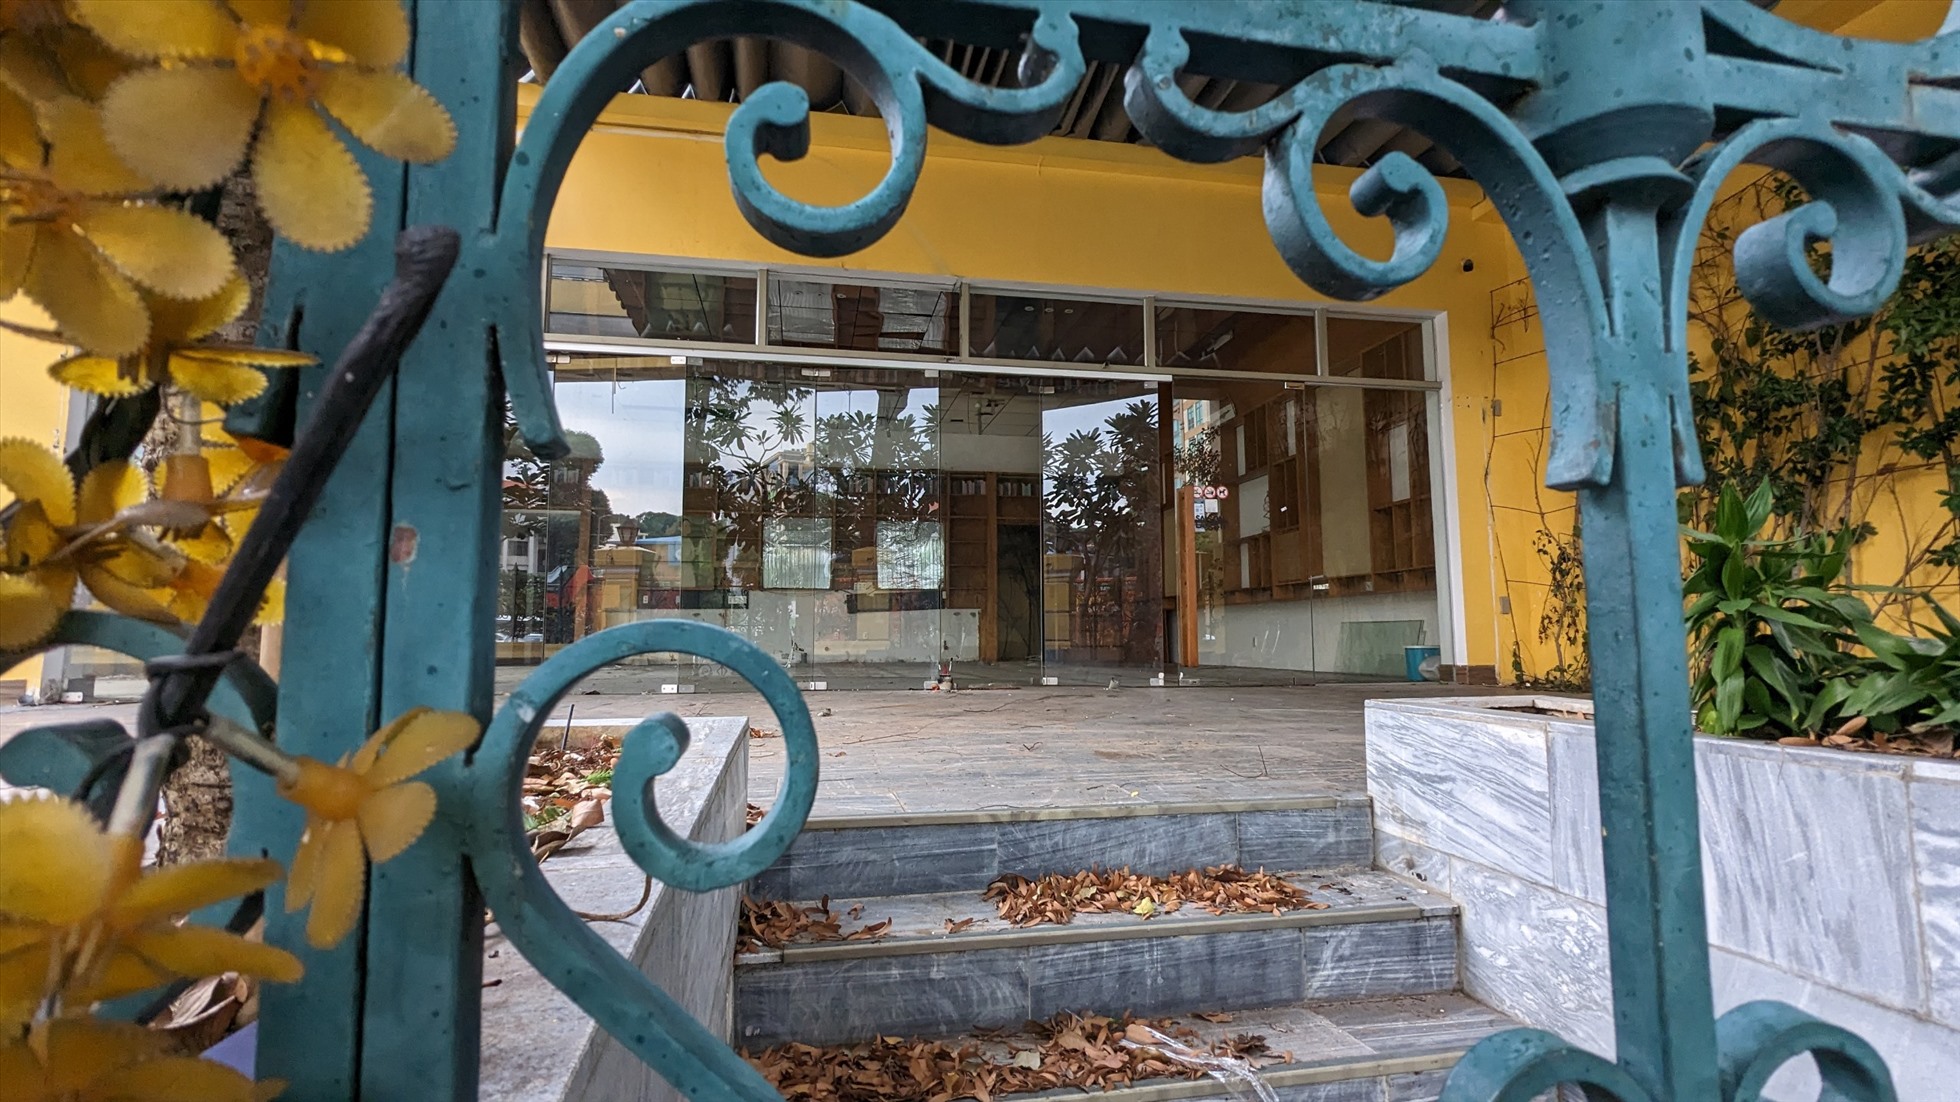 Tuy nhiên, theo ghi nhận, hàng loạt mặt bằng xung quanh khu vực vòng xoay Nhà thờ Đức Bà thời gian gần đây đã đóng cửa, ngưng kinh doanh. Trong ảnh là Cafe Saigon La Poste, cạnh Bưu điện Thành phố nhìn ra hướng Nhà thờ Đức Bà, đã “cửa đóng then cài” nhiều tháng qua.